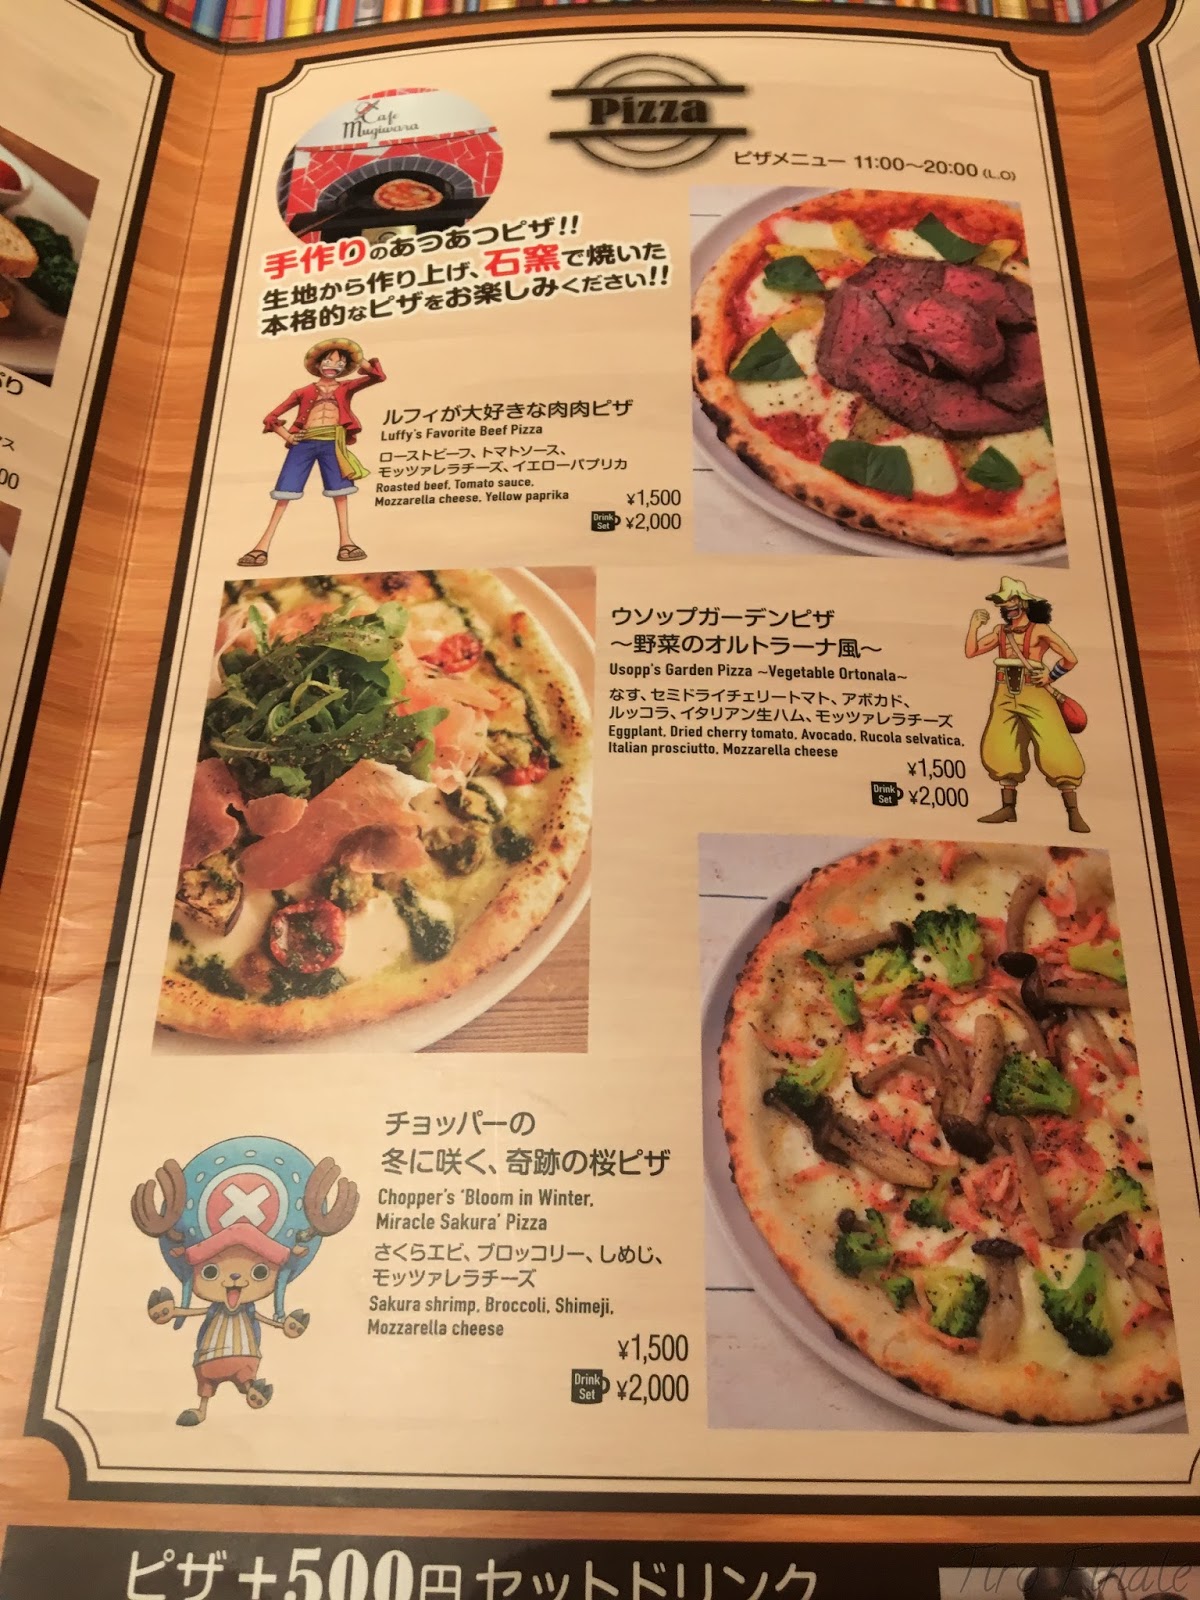 One Piece Cafe